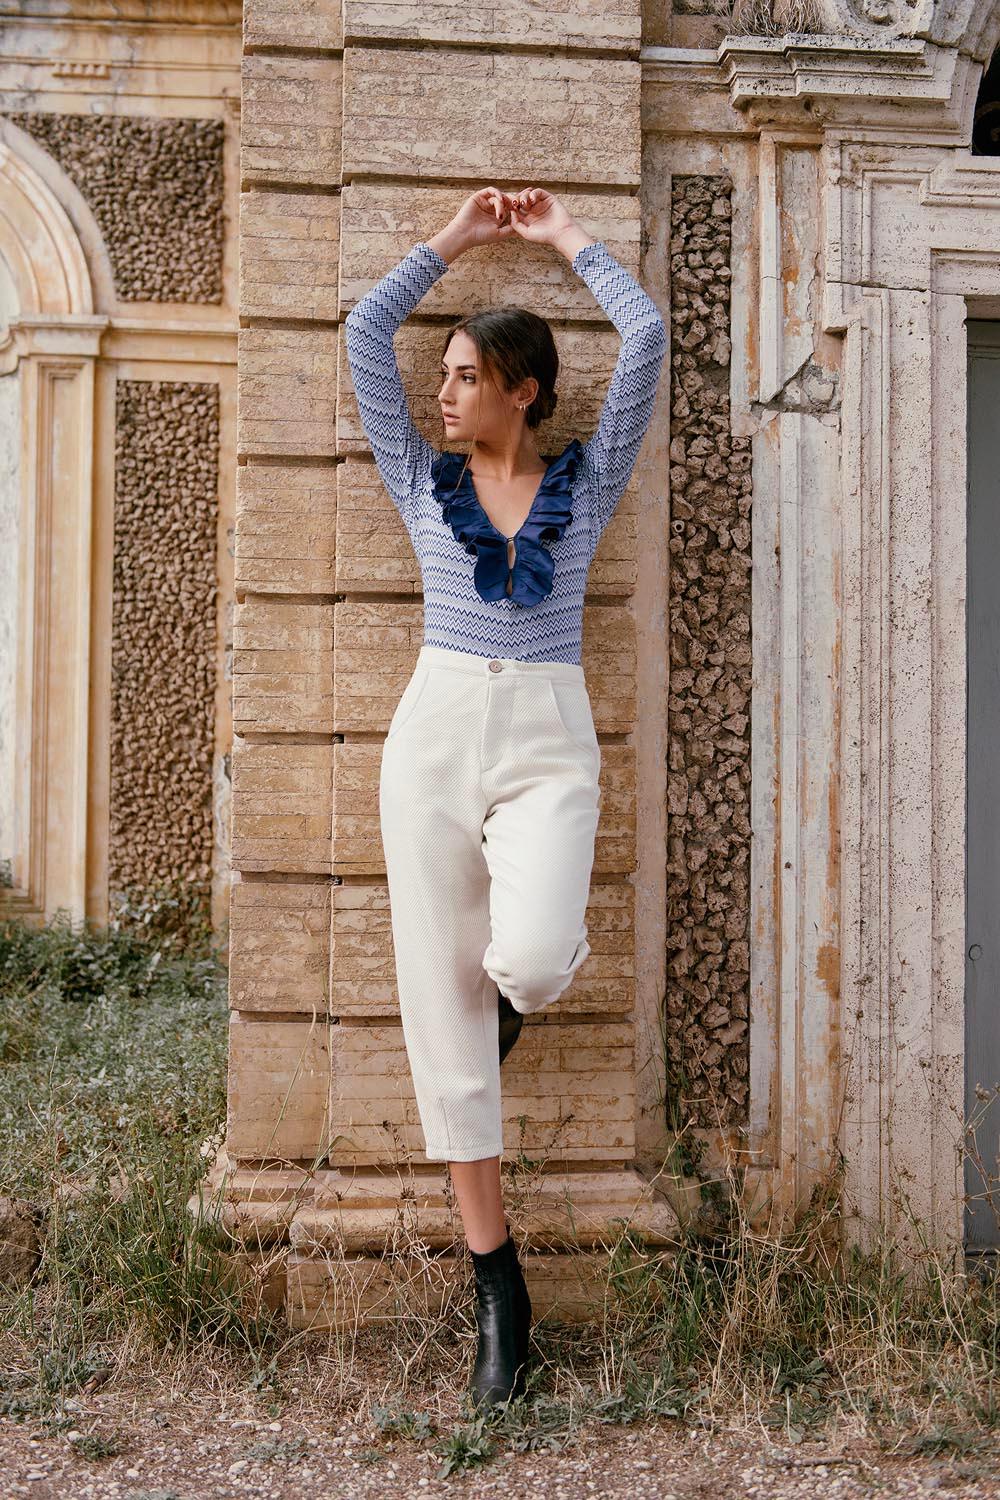 Pantalone Marrakech cotone lana lino canapa comodo vestibilita comoda brand malia lab moda etica abbigliamento sostenibile vestiti sostenibili donna in fibre naturali